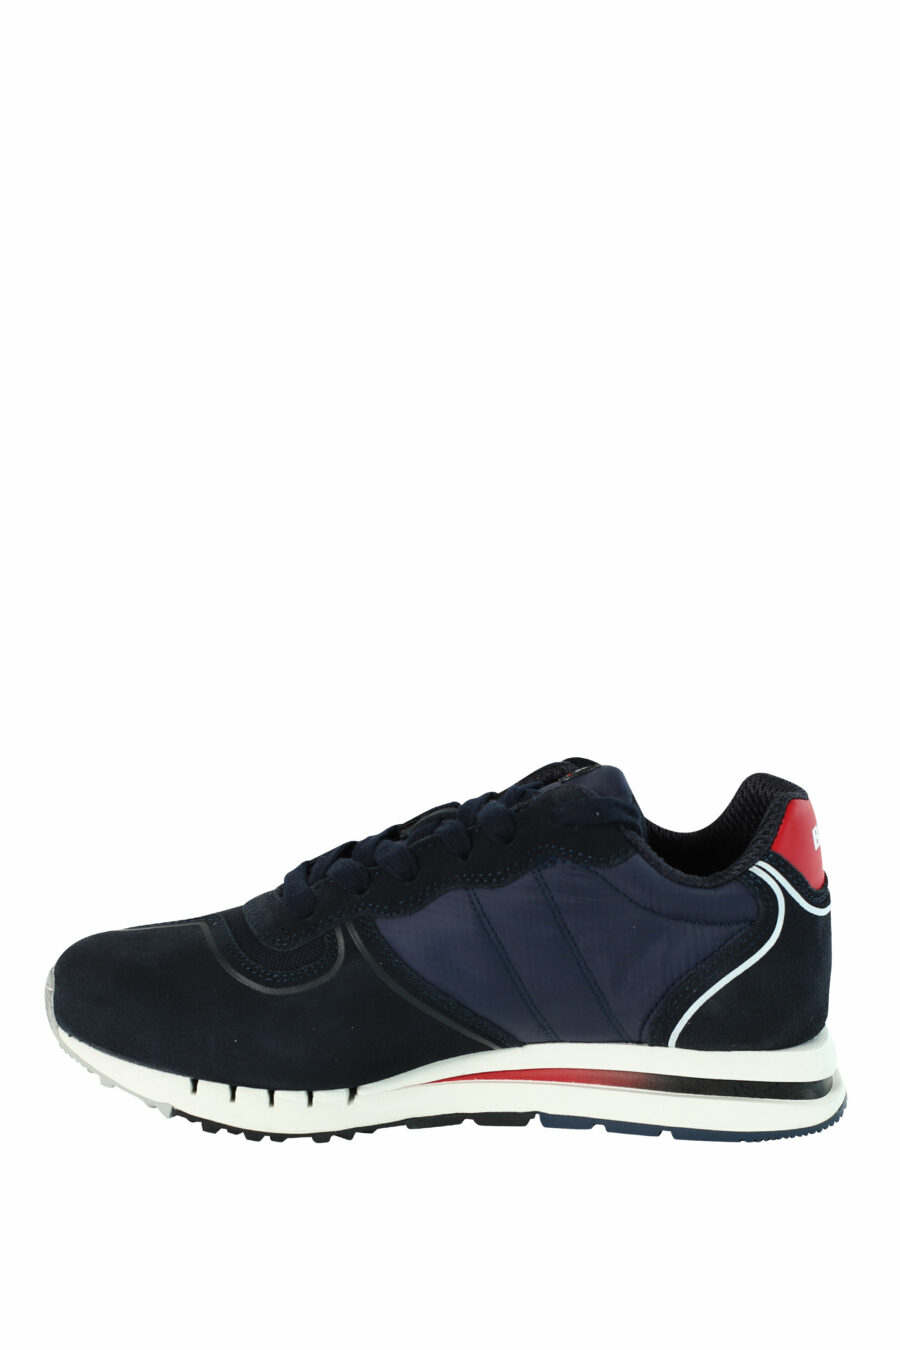 Blaue Schuhe "QUARTZ" mit roten Details - 8058156499454 3